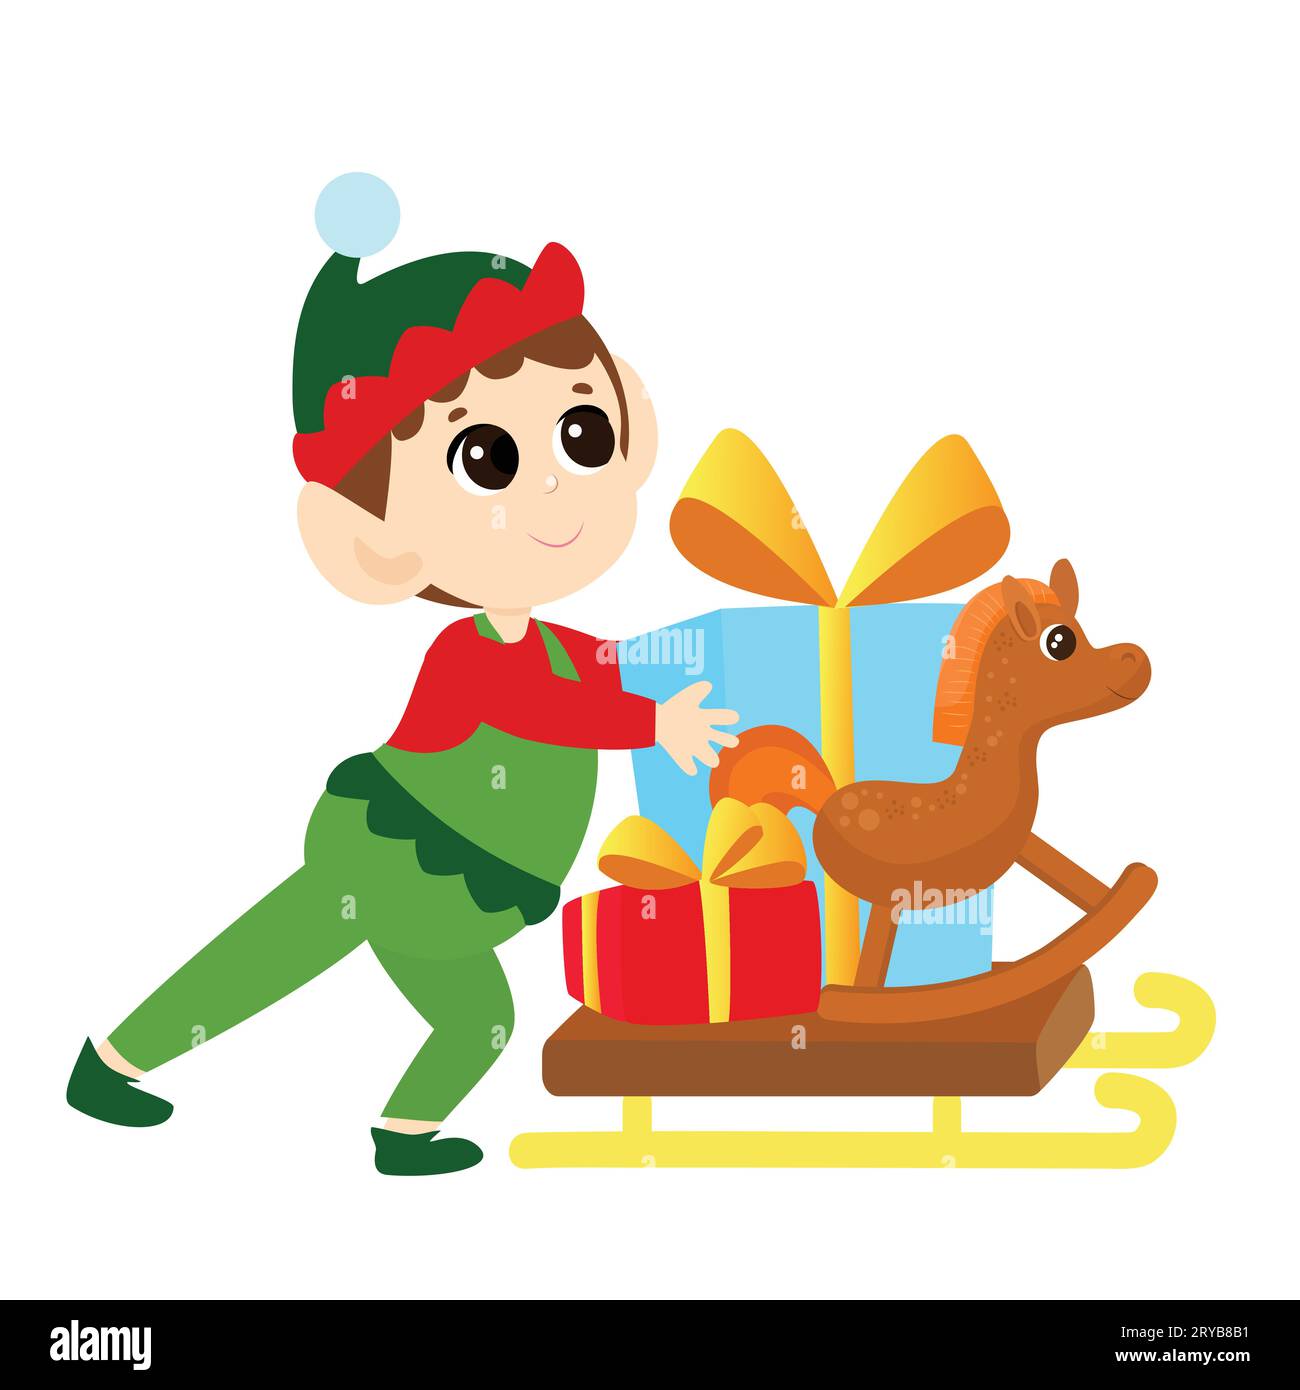 Ein Elfenjunge trägt einen Schlitten mit Weihnachtsgeschenken. Das Kind ist glücklich und trägt ein traditionelles Elfenkostüm. Festliche Illustration. Stock Vektor